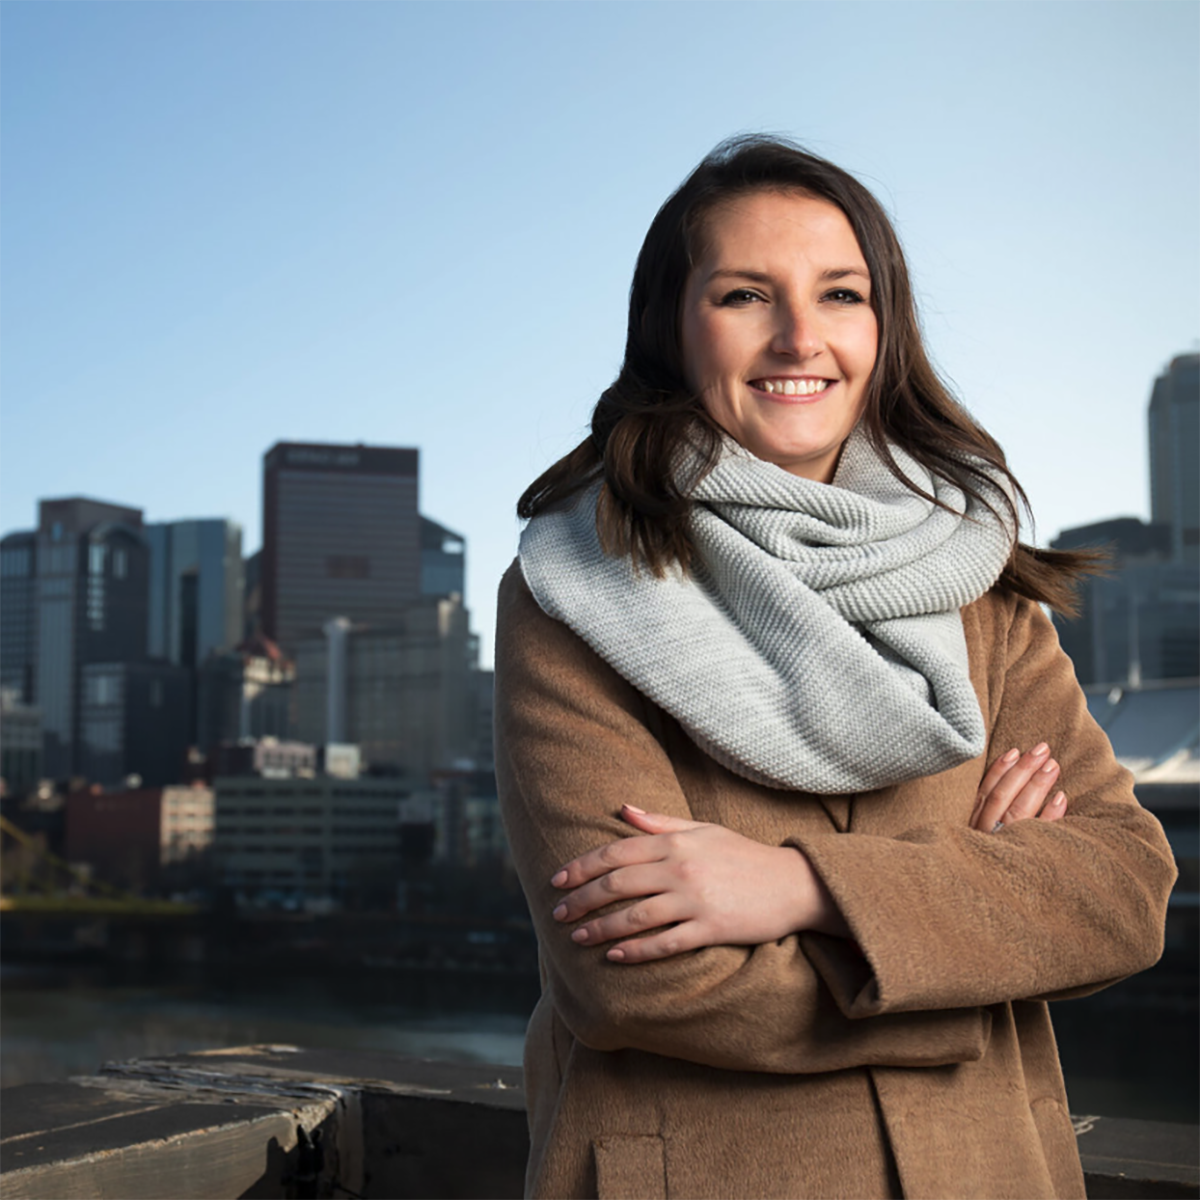 Photo of Caitlin Fadgen, smiling in front of 的 匹兹堡 skyline